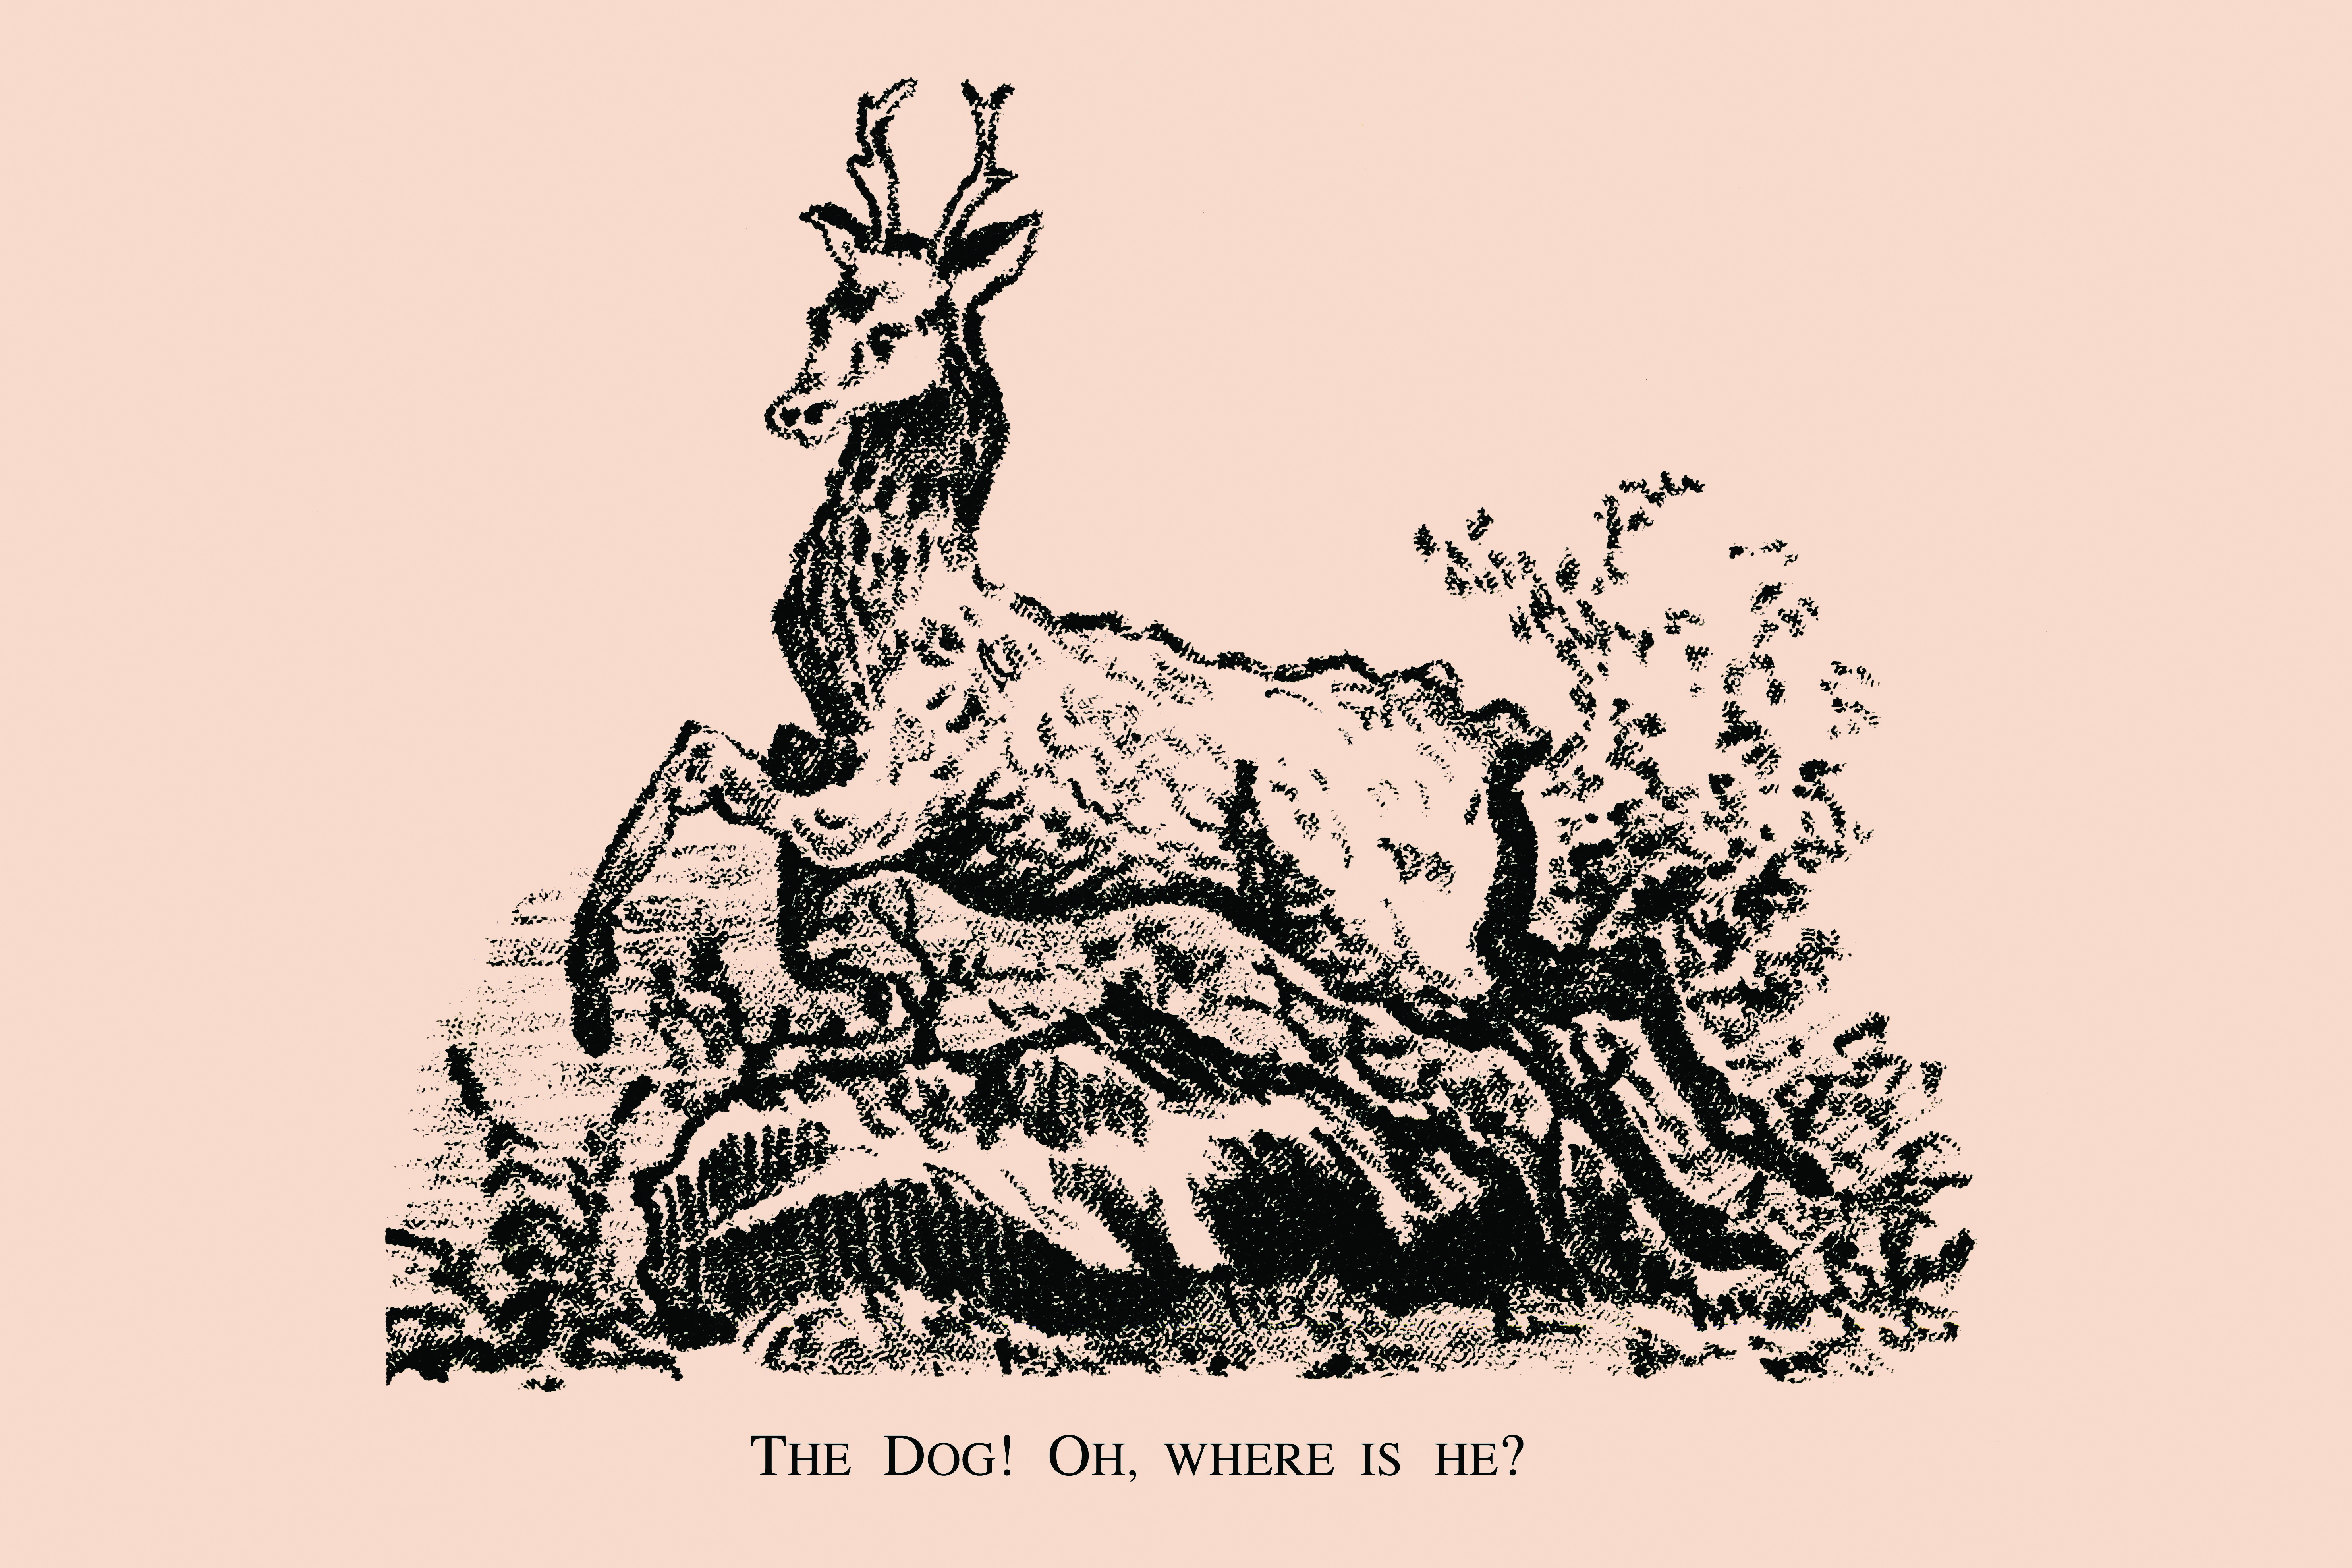 Können Sie den in der Waldszene versteckten Hund sehen?